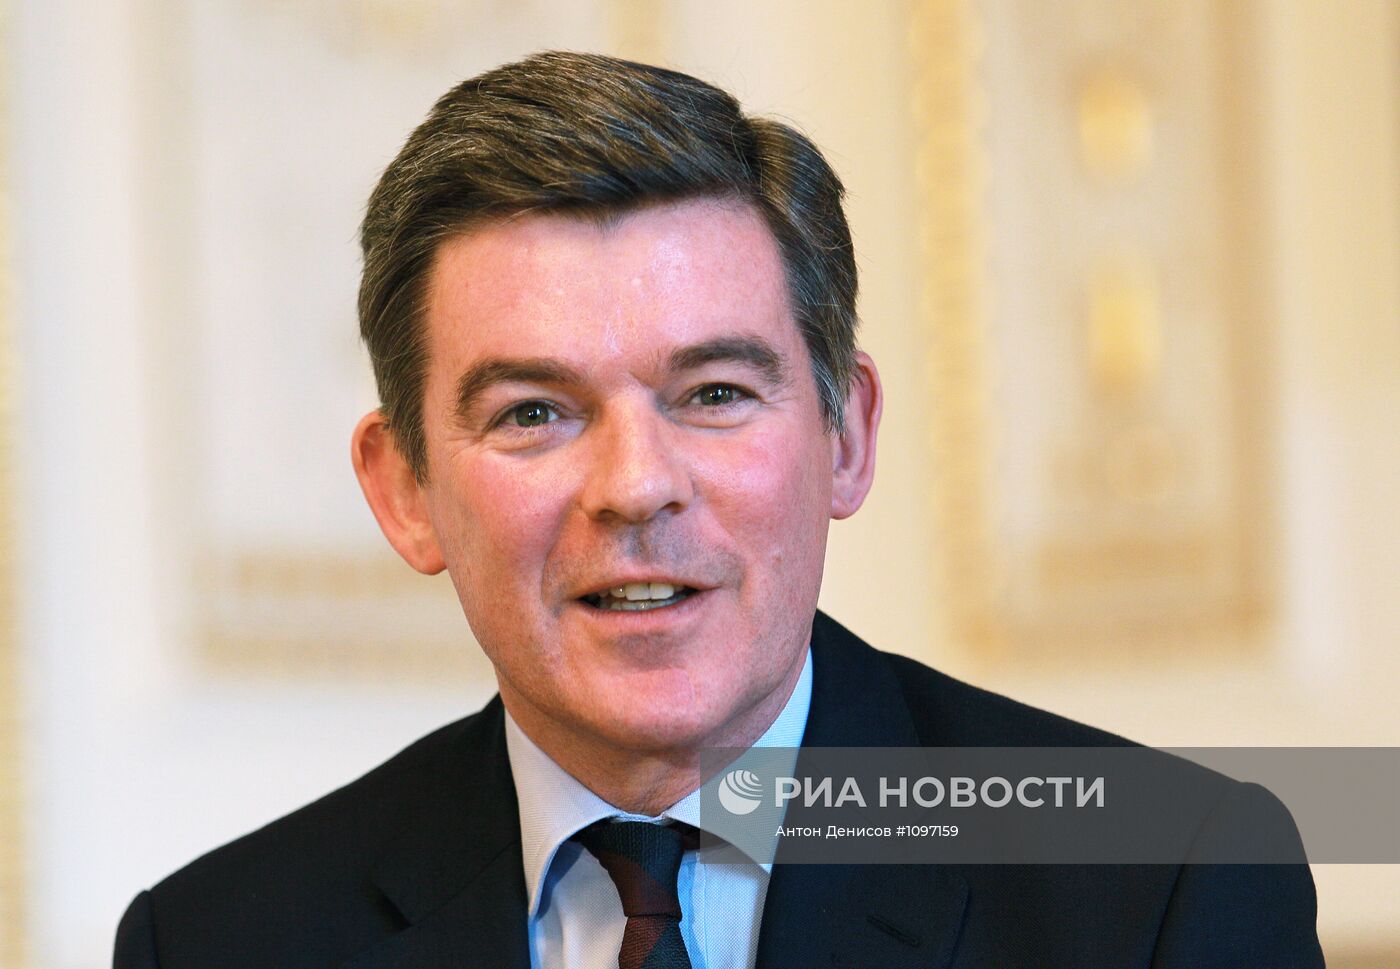 Торжественный прием в резиденции посла Великобритании в Москве